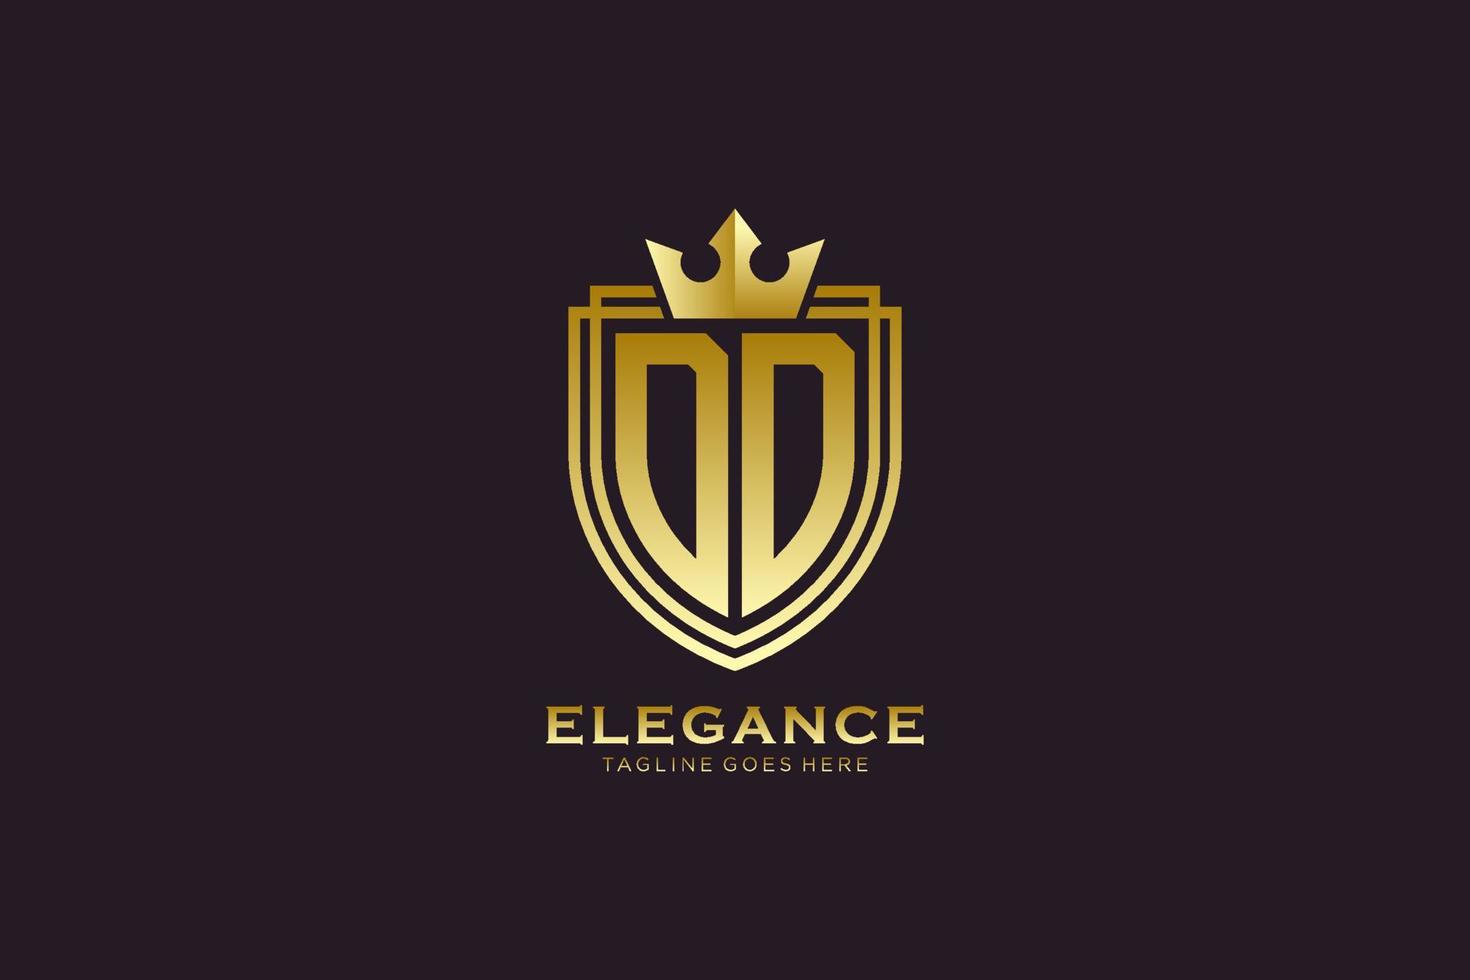 logo monogramme de luxe élégant initial dd ou modèle de badge avec volutes et couronne royale - parfait pour les projets de marque de luxe vecteur